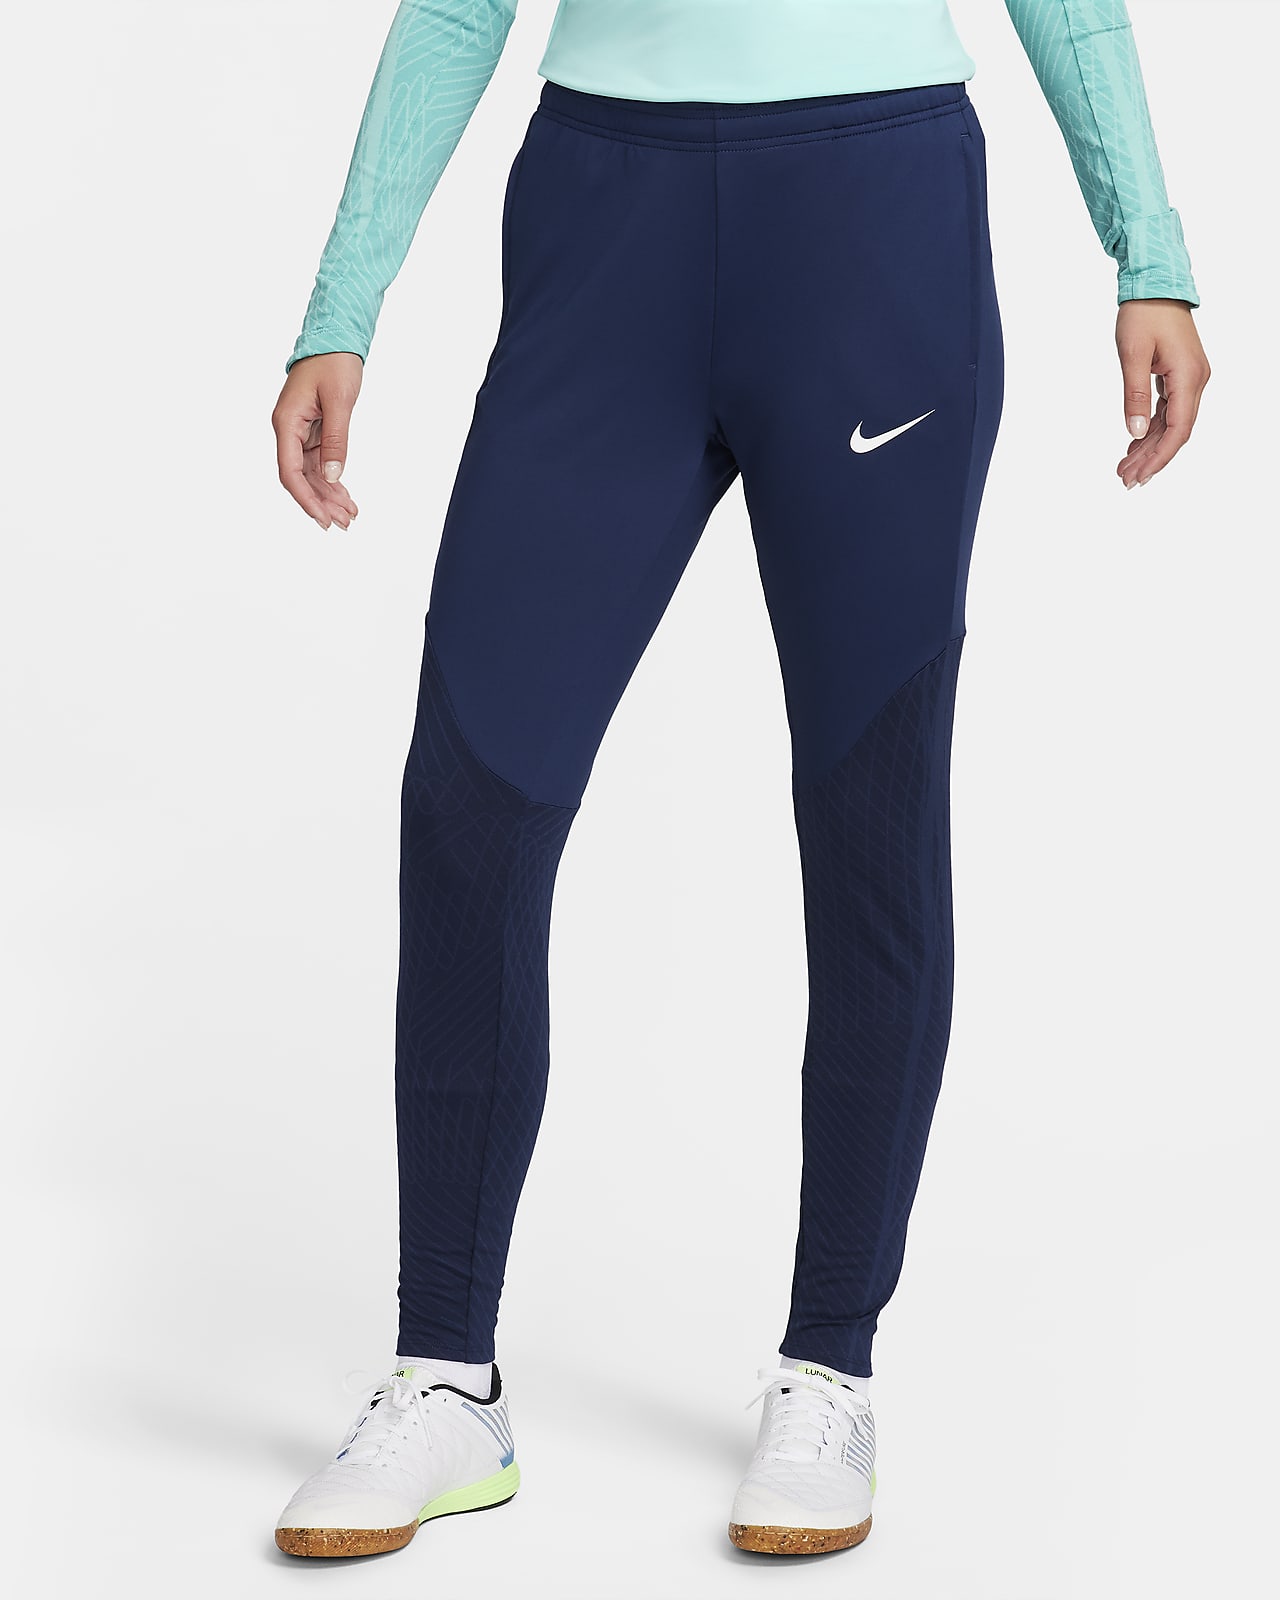 Nike tira el precio de estos cómodos pantalones de fútbol para mujer:  ¡ahora con un 30% de descuento!